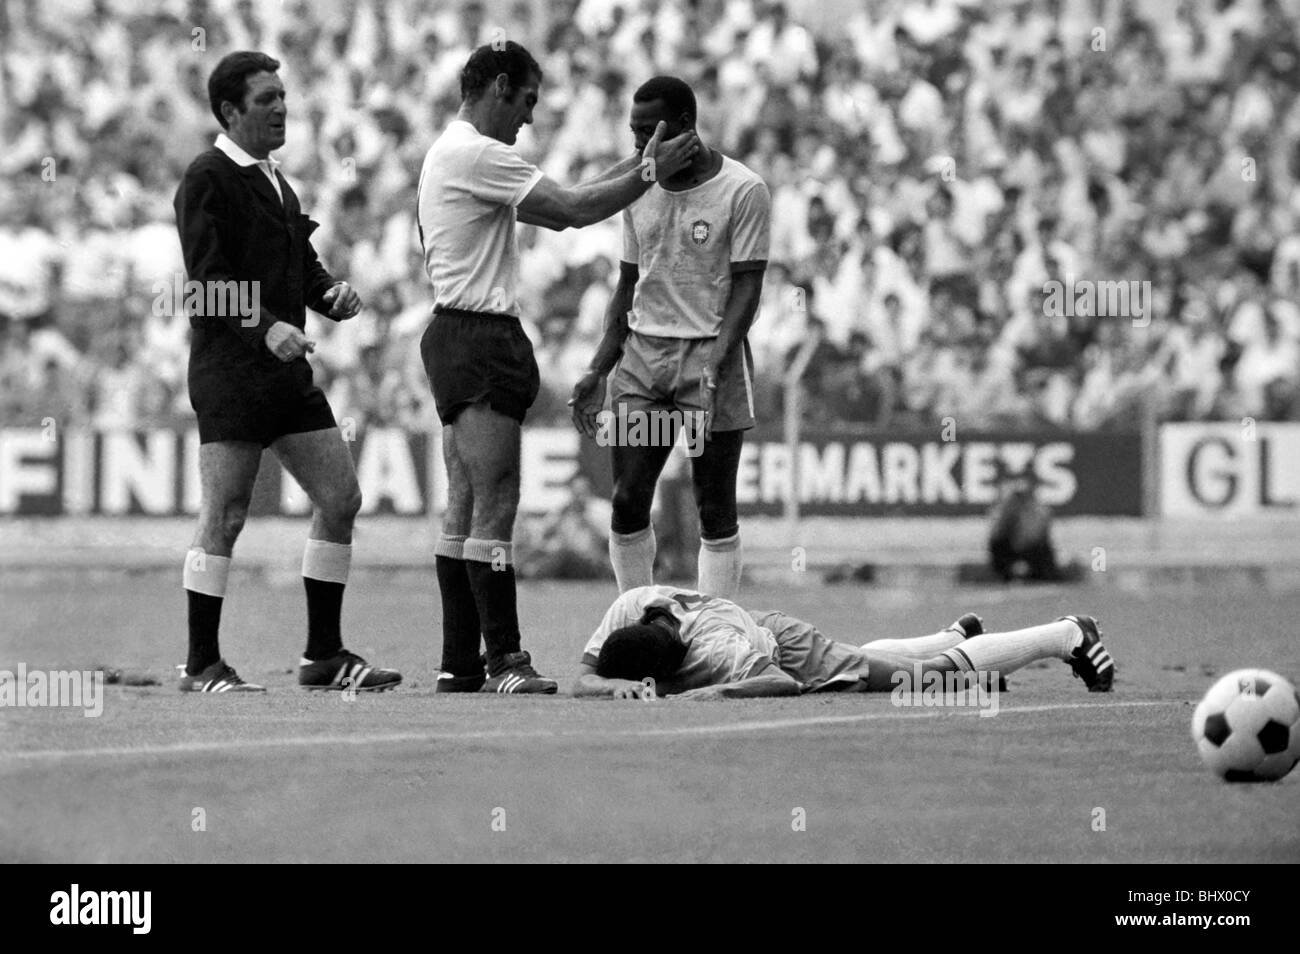 Pele calmée par Uruguain dvd tandis que la masse se trouve sur Jairzinho abattus. Brésil c. Uruguay : demi-finale de la Coupe du monde. Juillet 1970 Banque D'Images